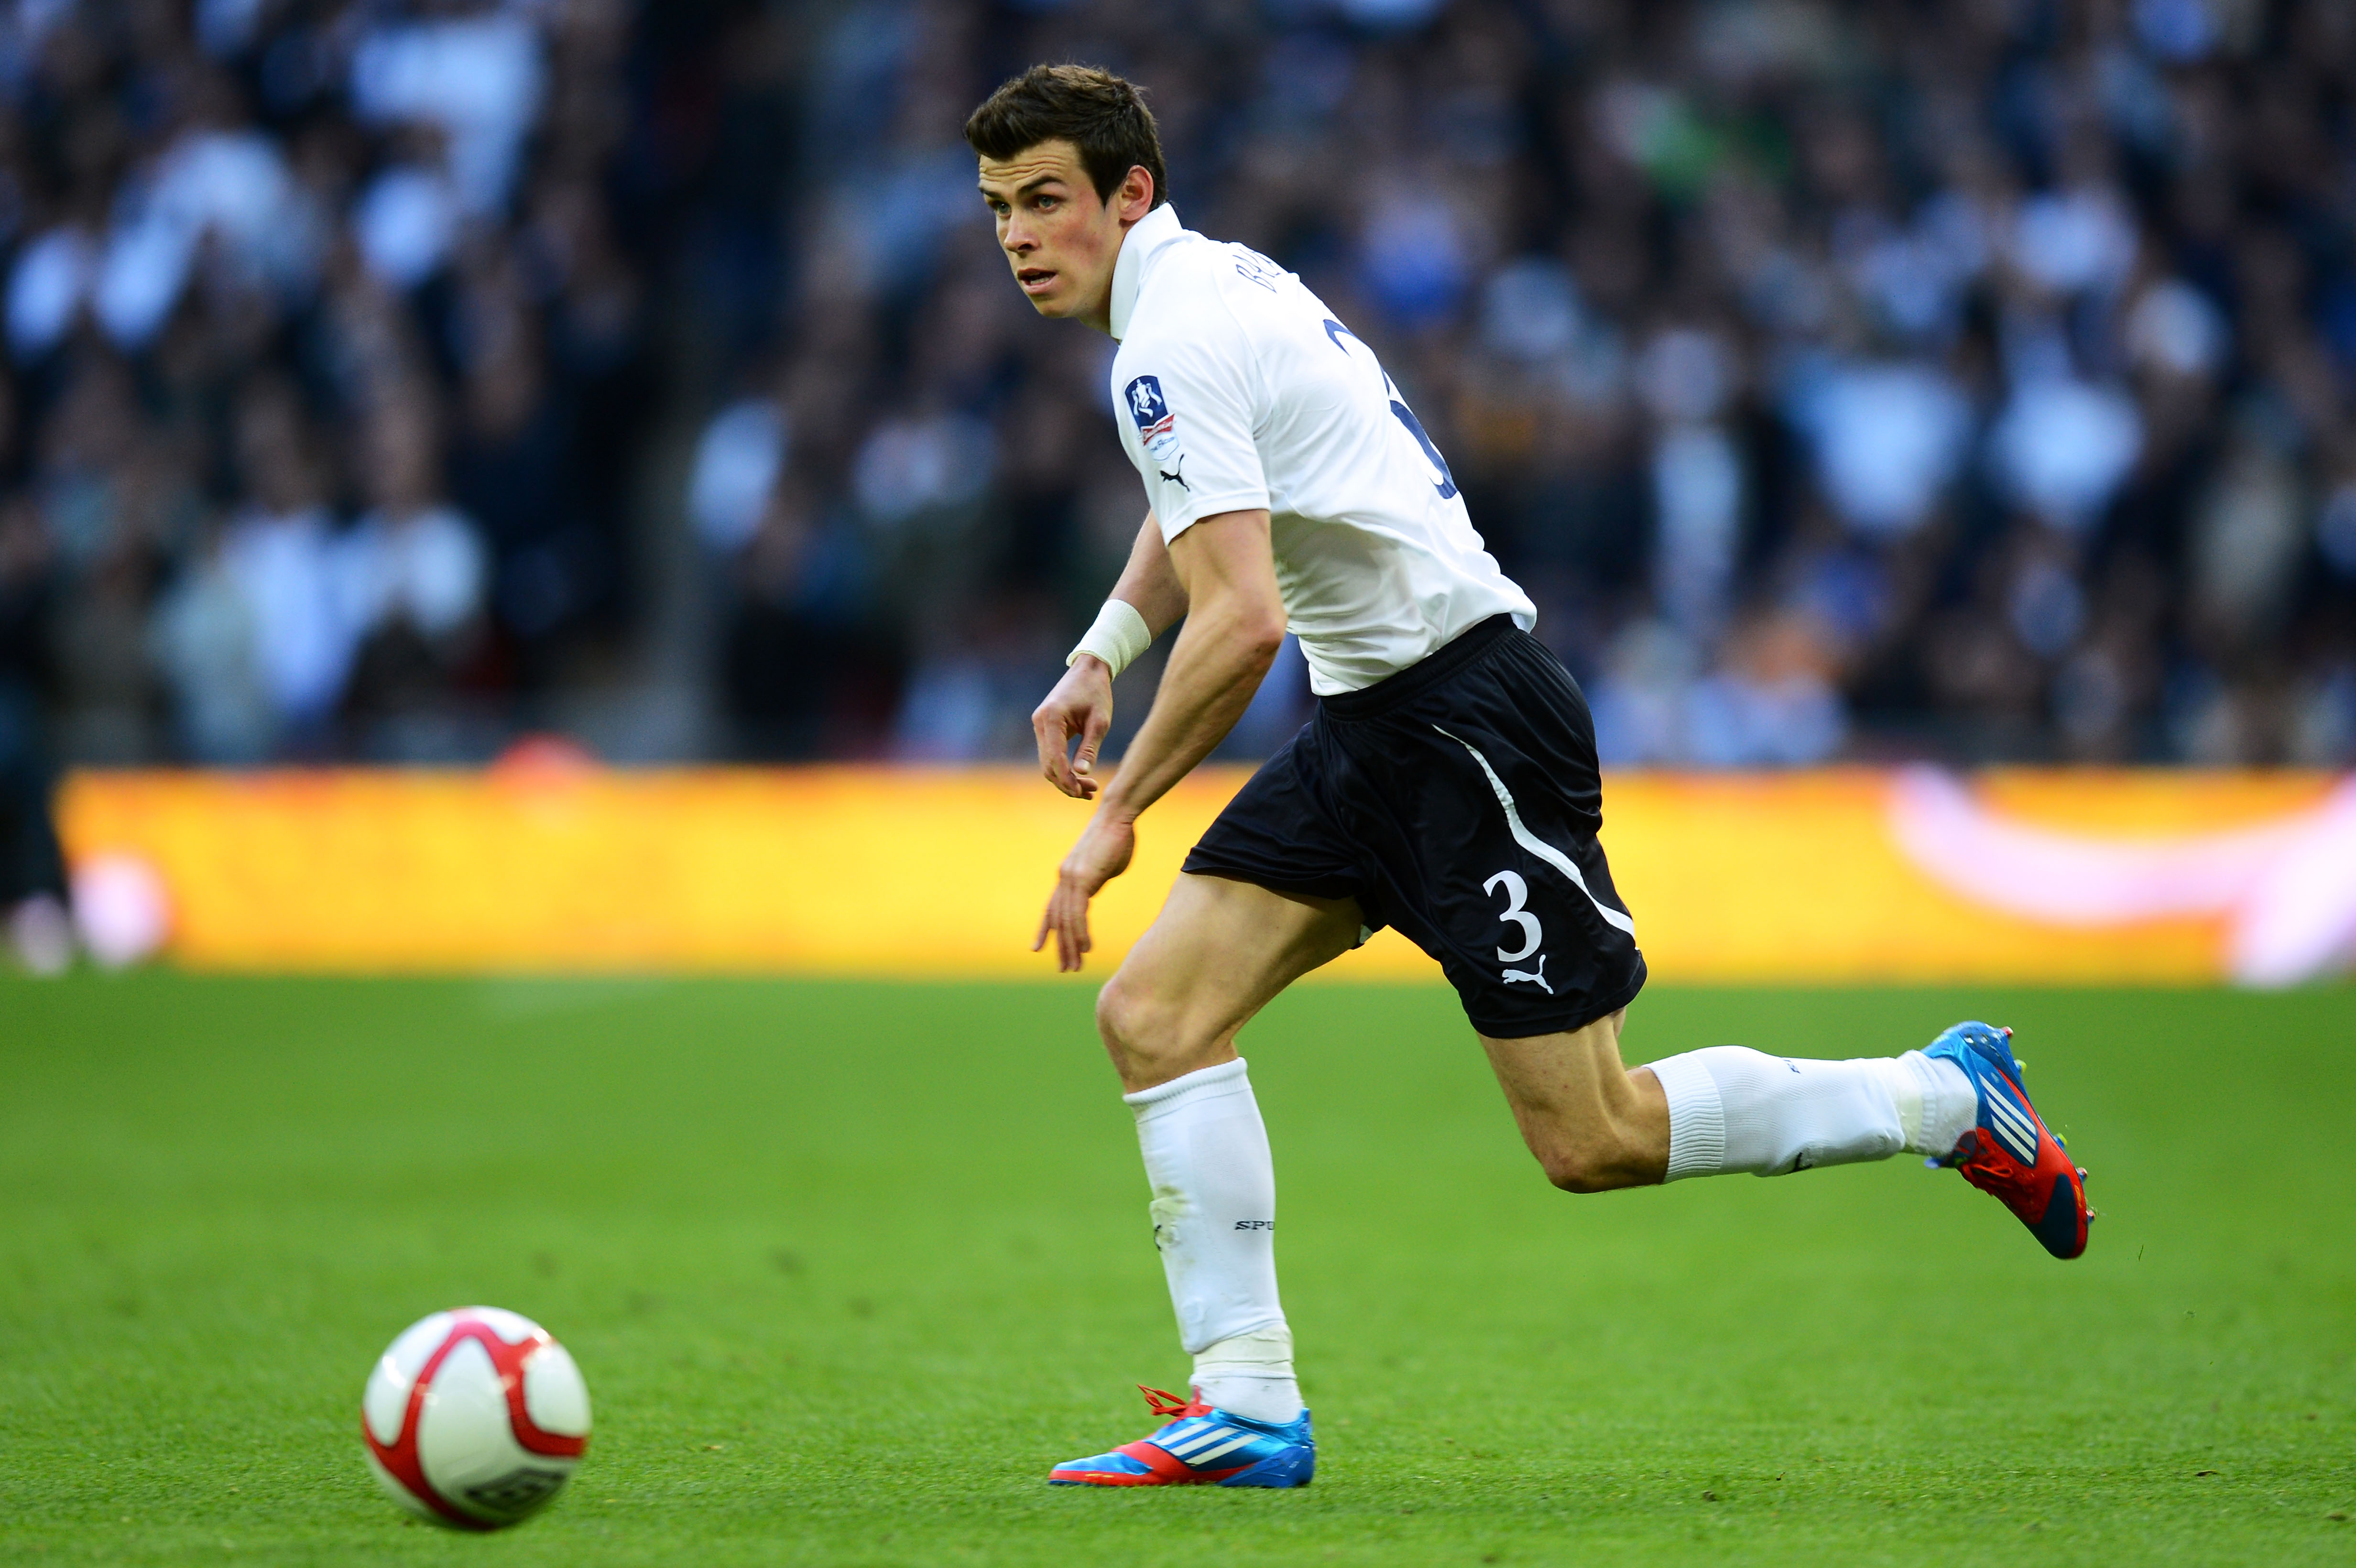 Gareth Bale reducerade till 2-1, men närmare än så kom aldrig Tottenham.